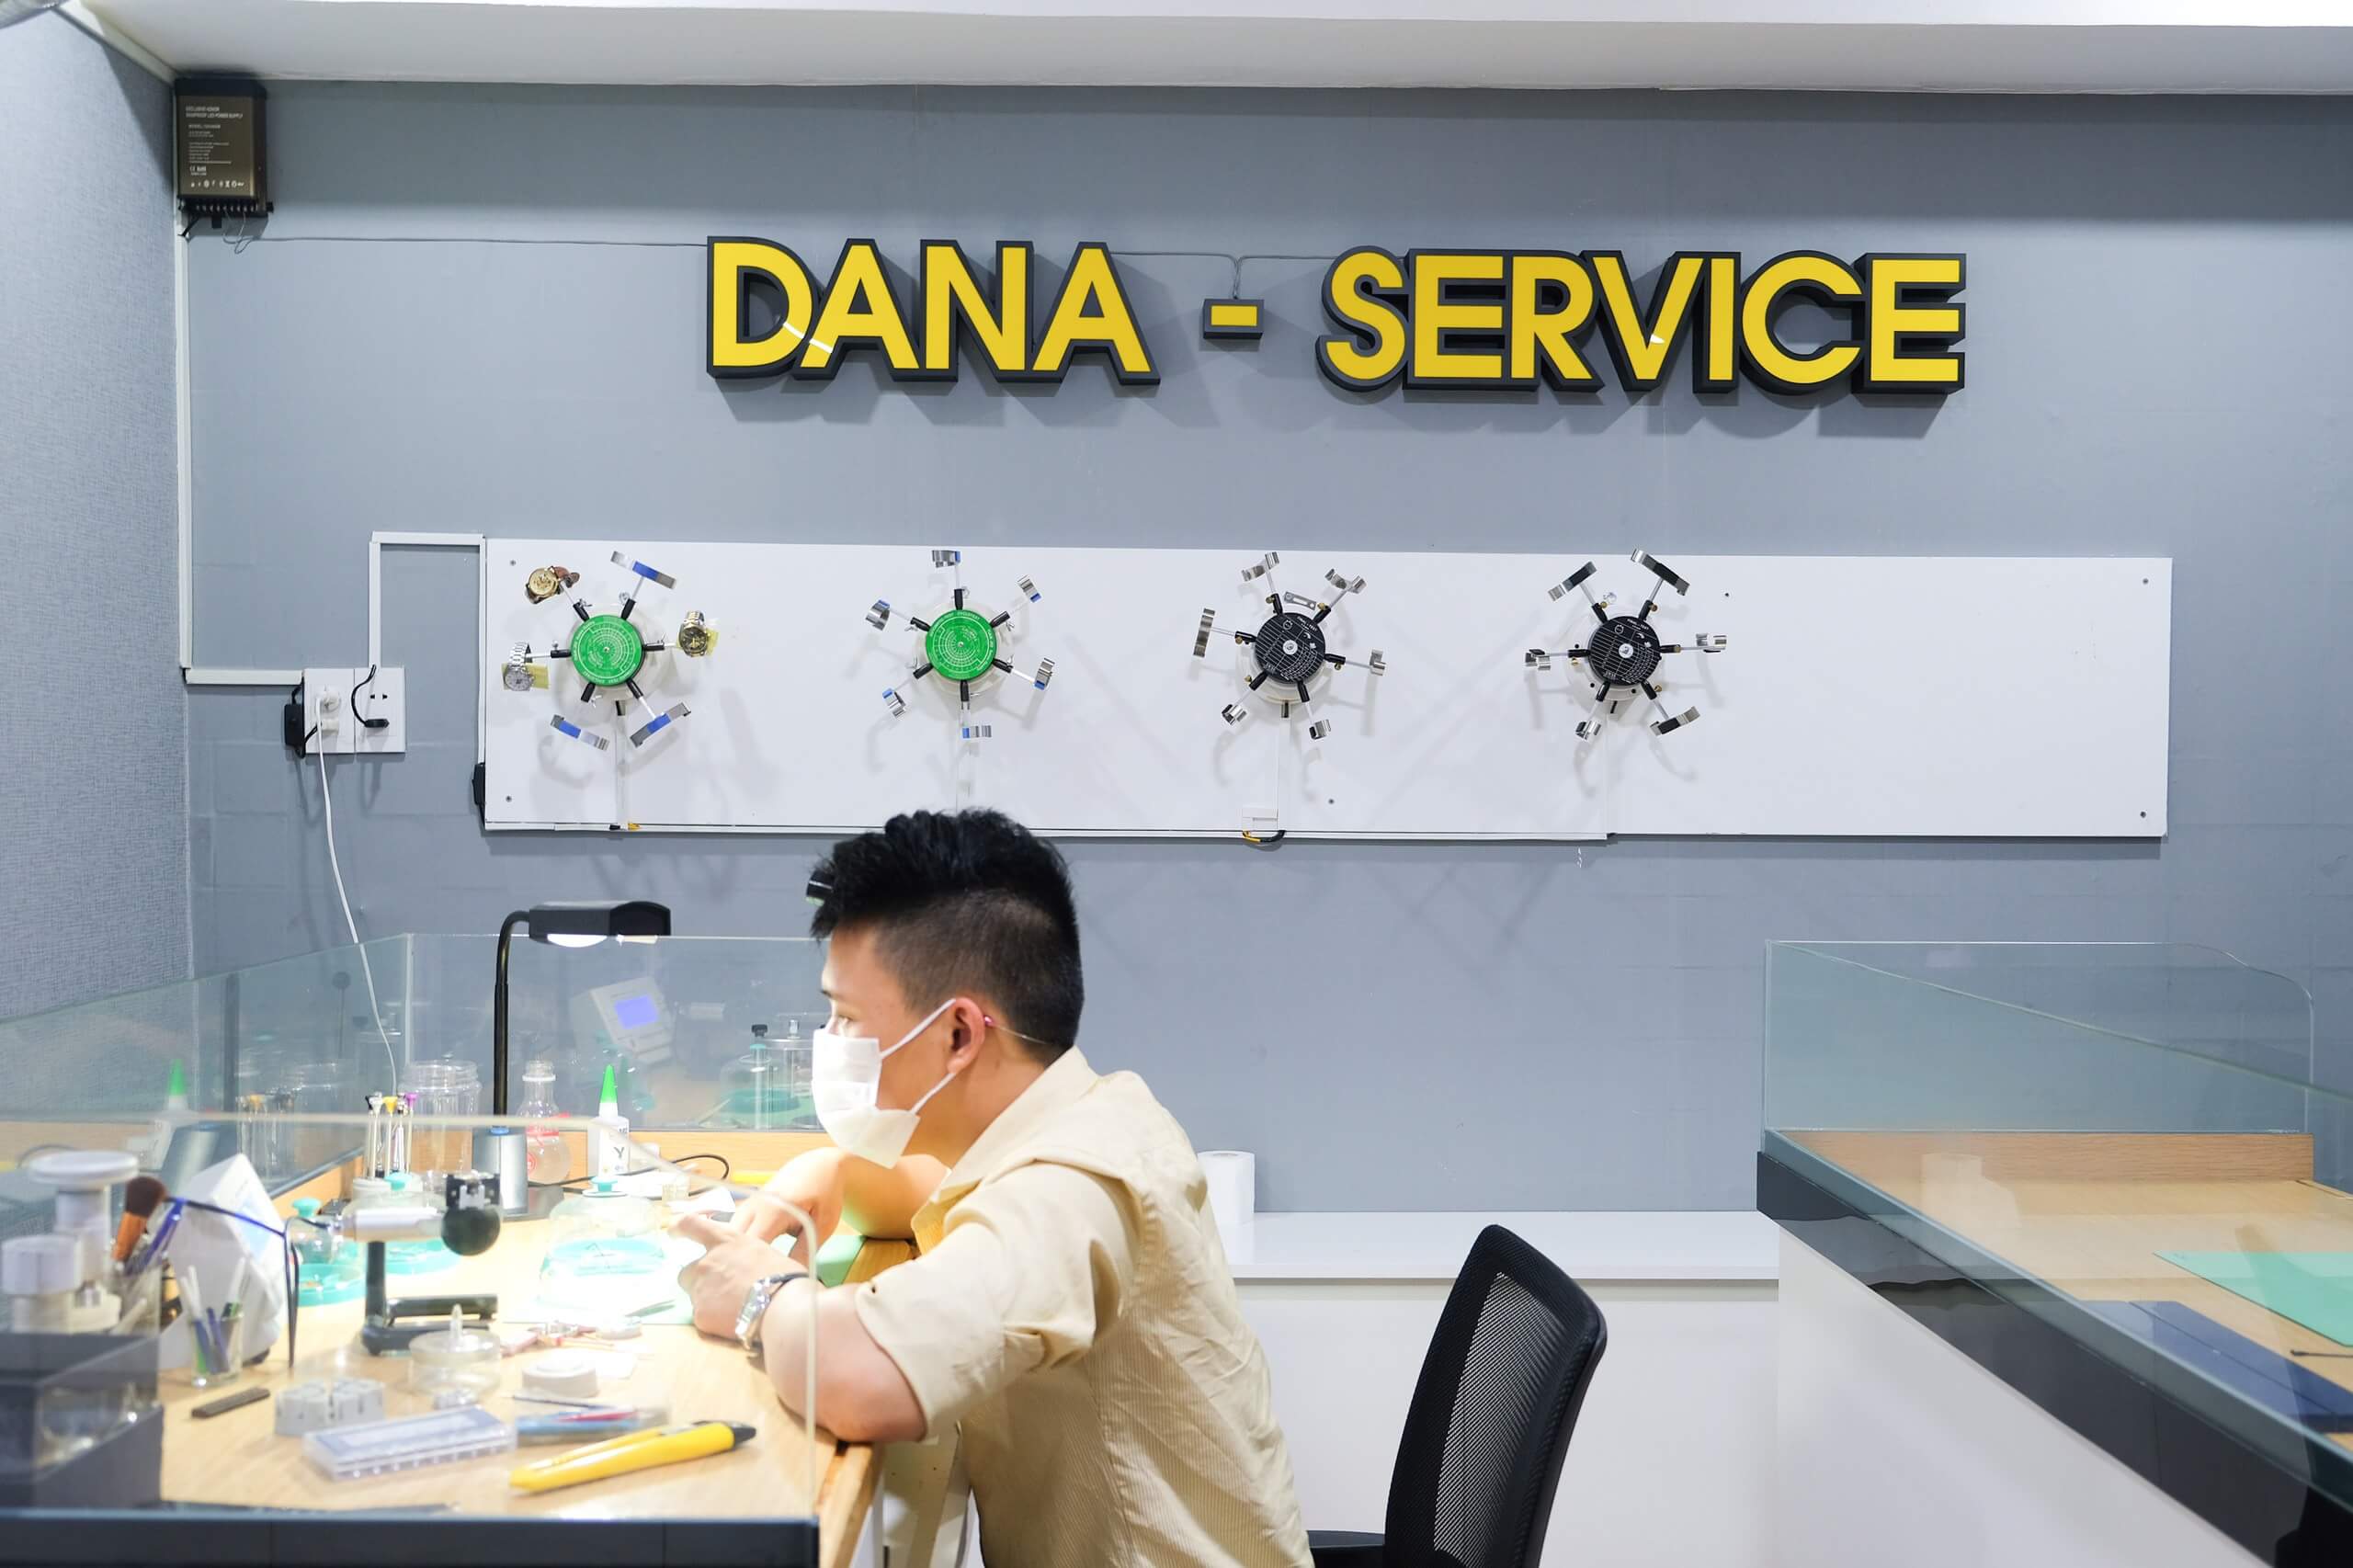 Trung tâm sửa chữa và bảo hành đồng hồ uy tín tại Đà Nẵng